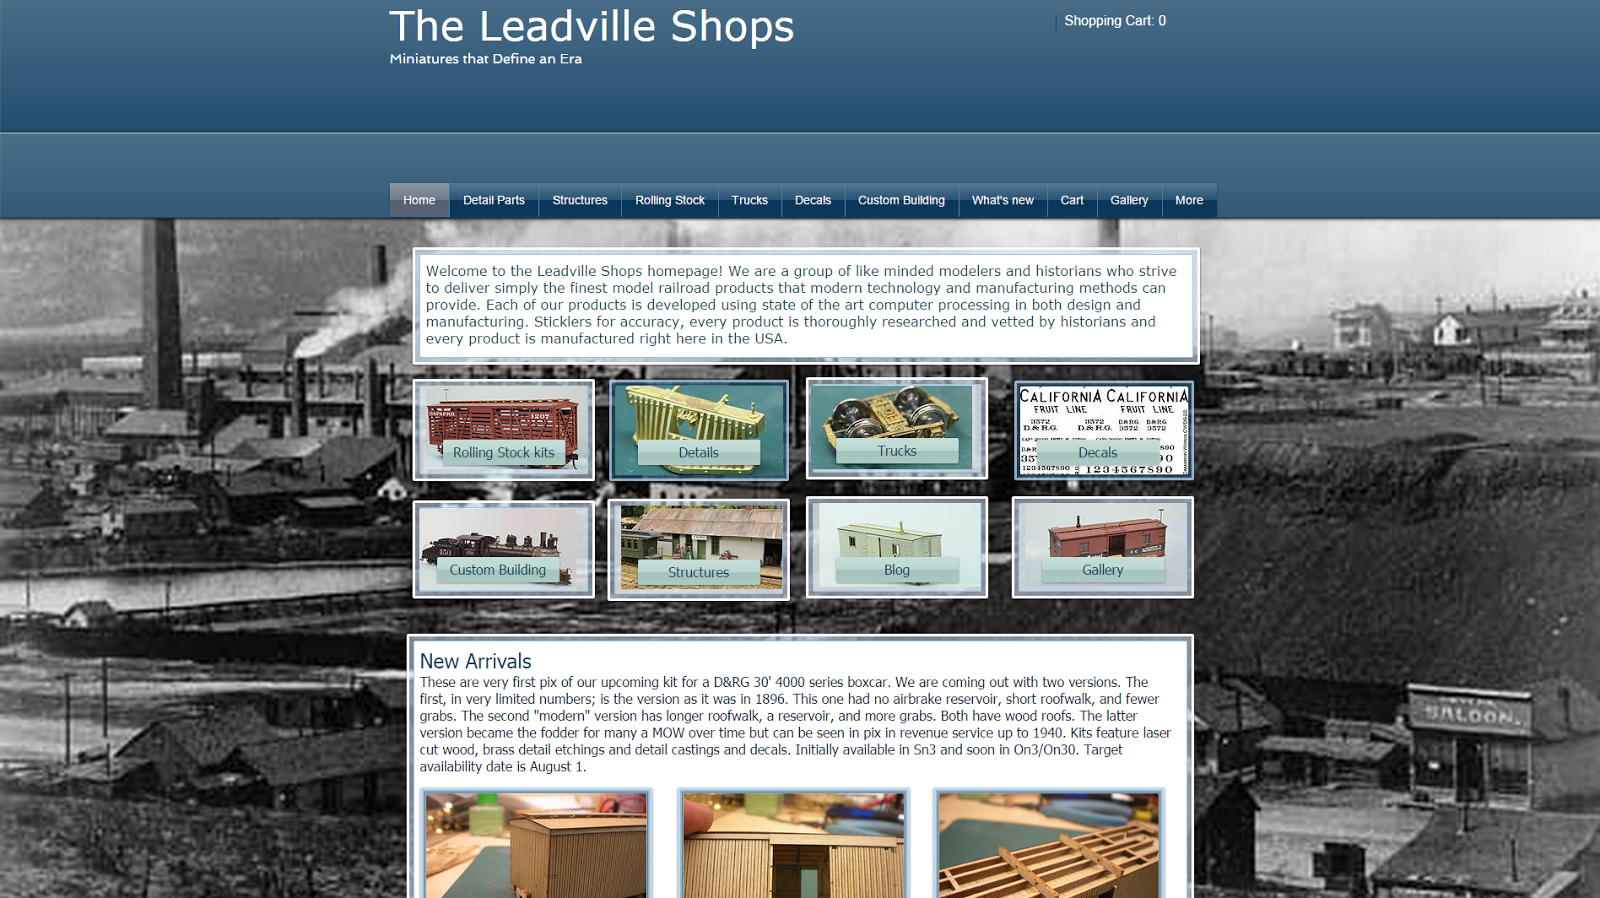 The Leadville Shops: